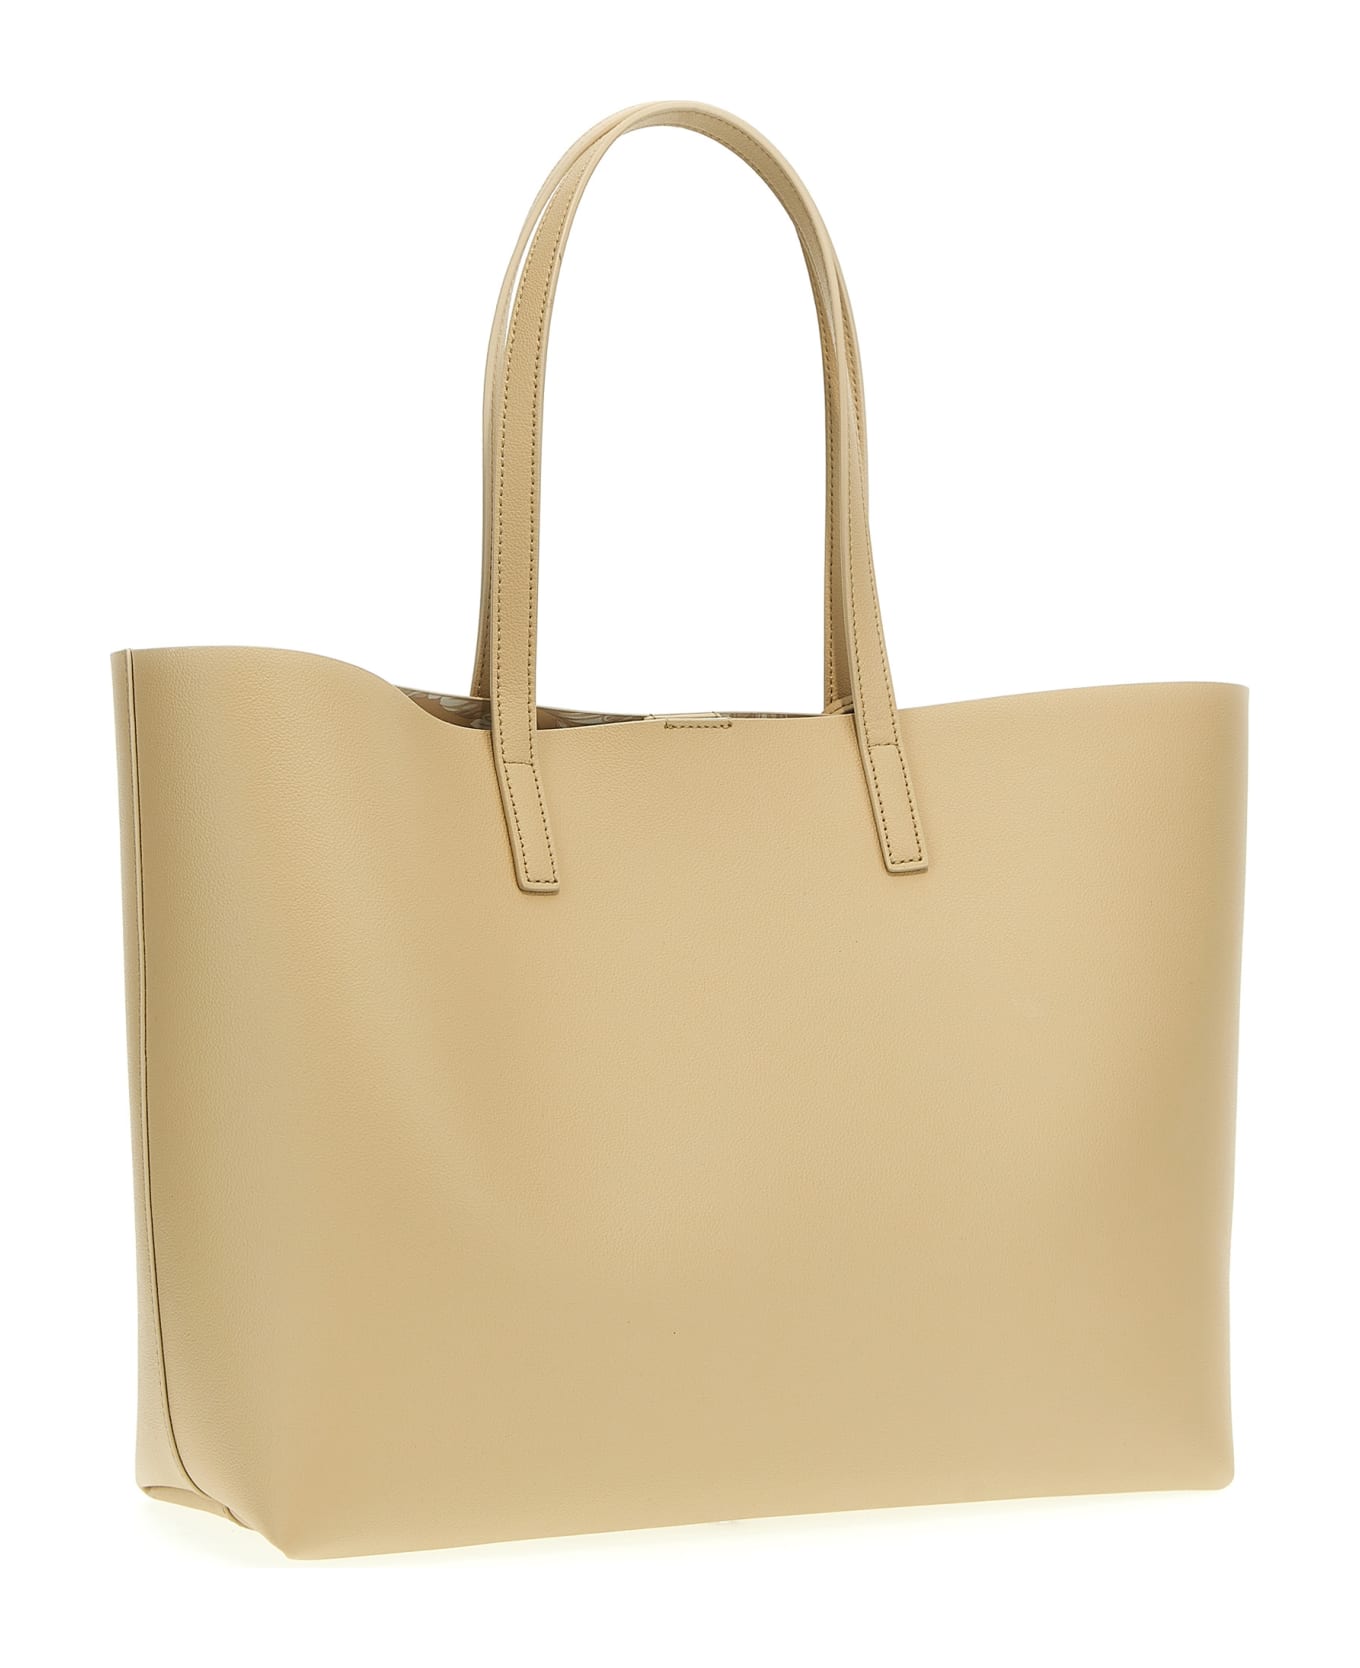 Versace 'virtus' Shopping Bag - Beige